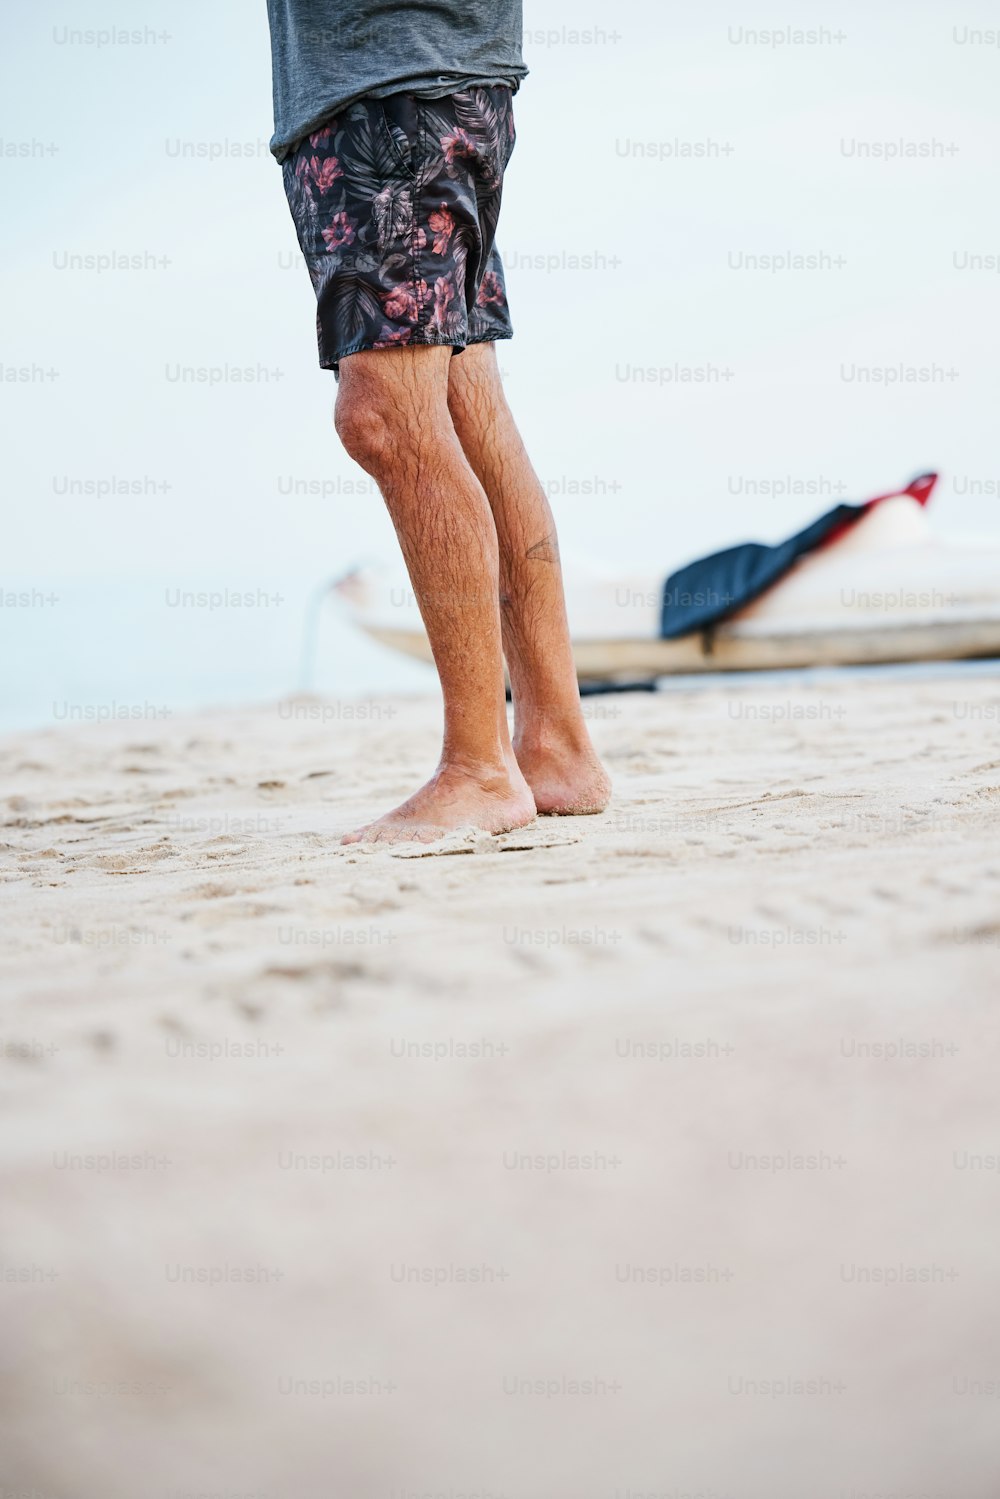 砂に足を踏み入れてビーチに立っている人